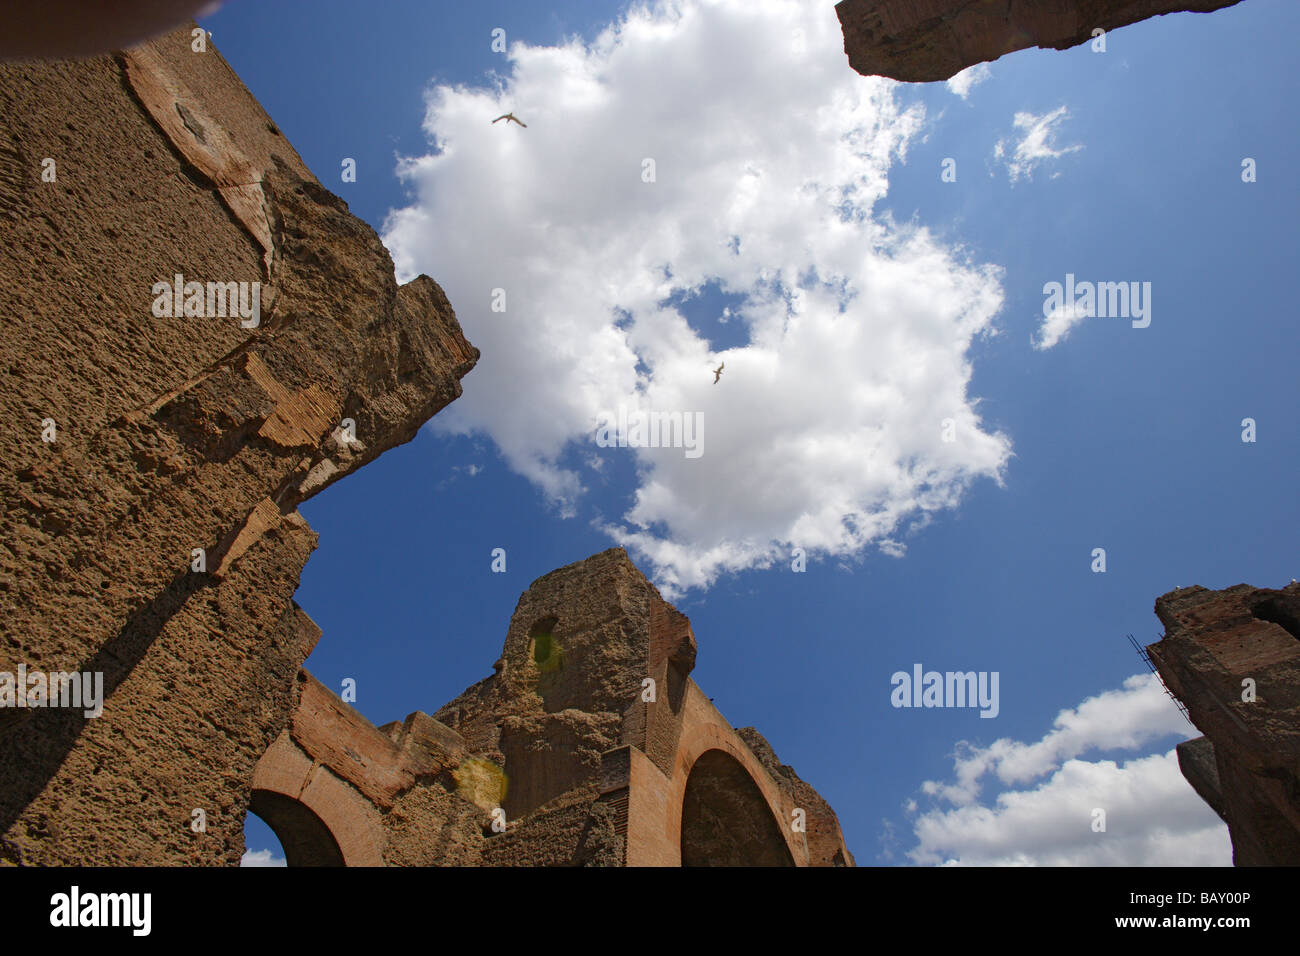 Terme di Caracalla, Roman public baths of Caracalla, Rome, Italy, Europe Stock Photo